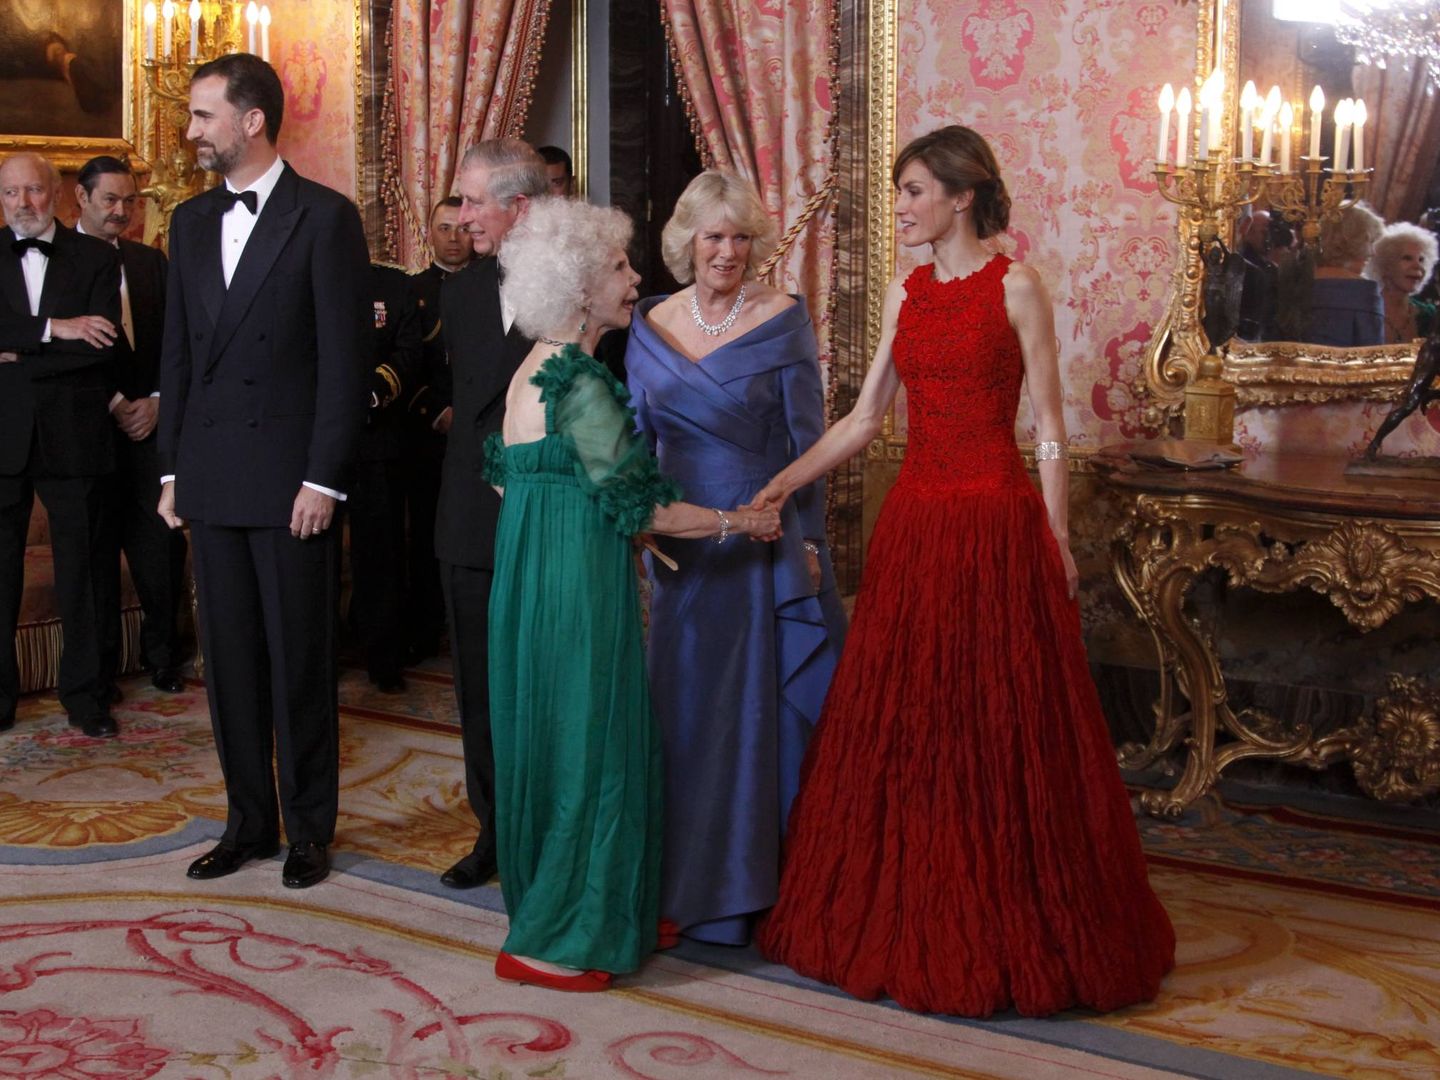 La duquesa de Alba saluda a la reina Letizia ante la mirada de Camilla Parker Bowles. (Cordon Press)